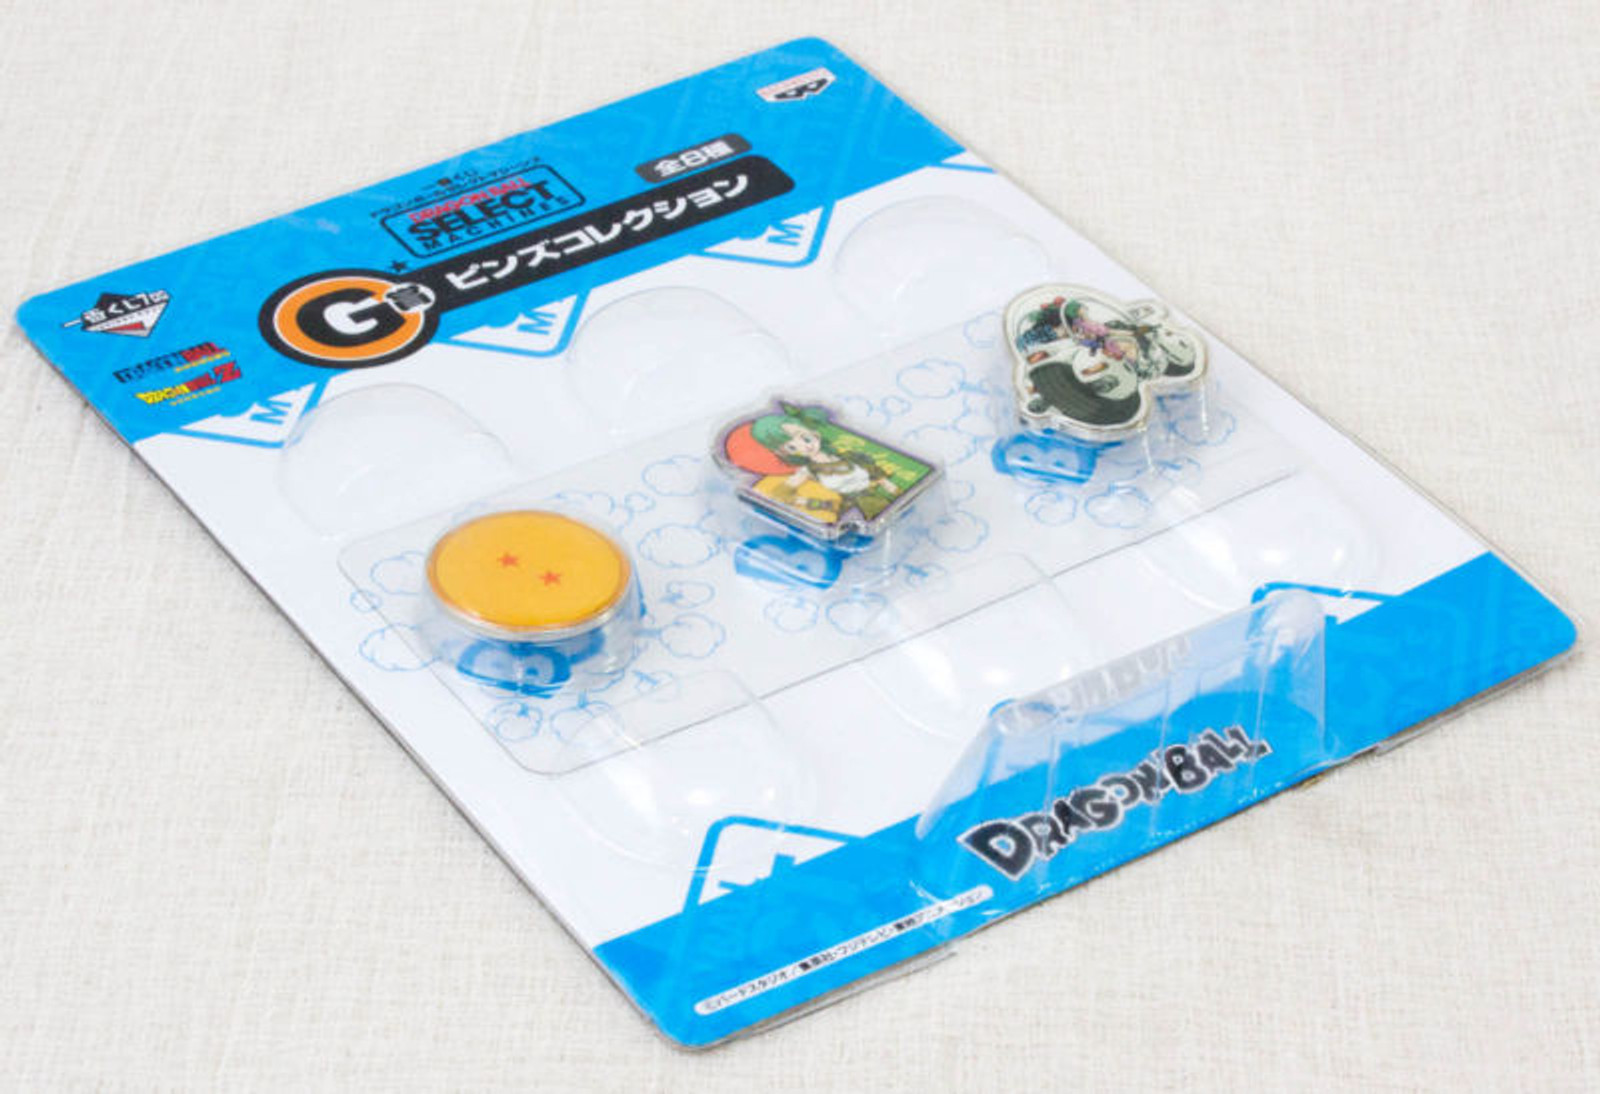 Dragon Ball Z Select Machines Prize G Pins Banpresto 2 JAPAN ANIME MANGA